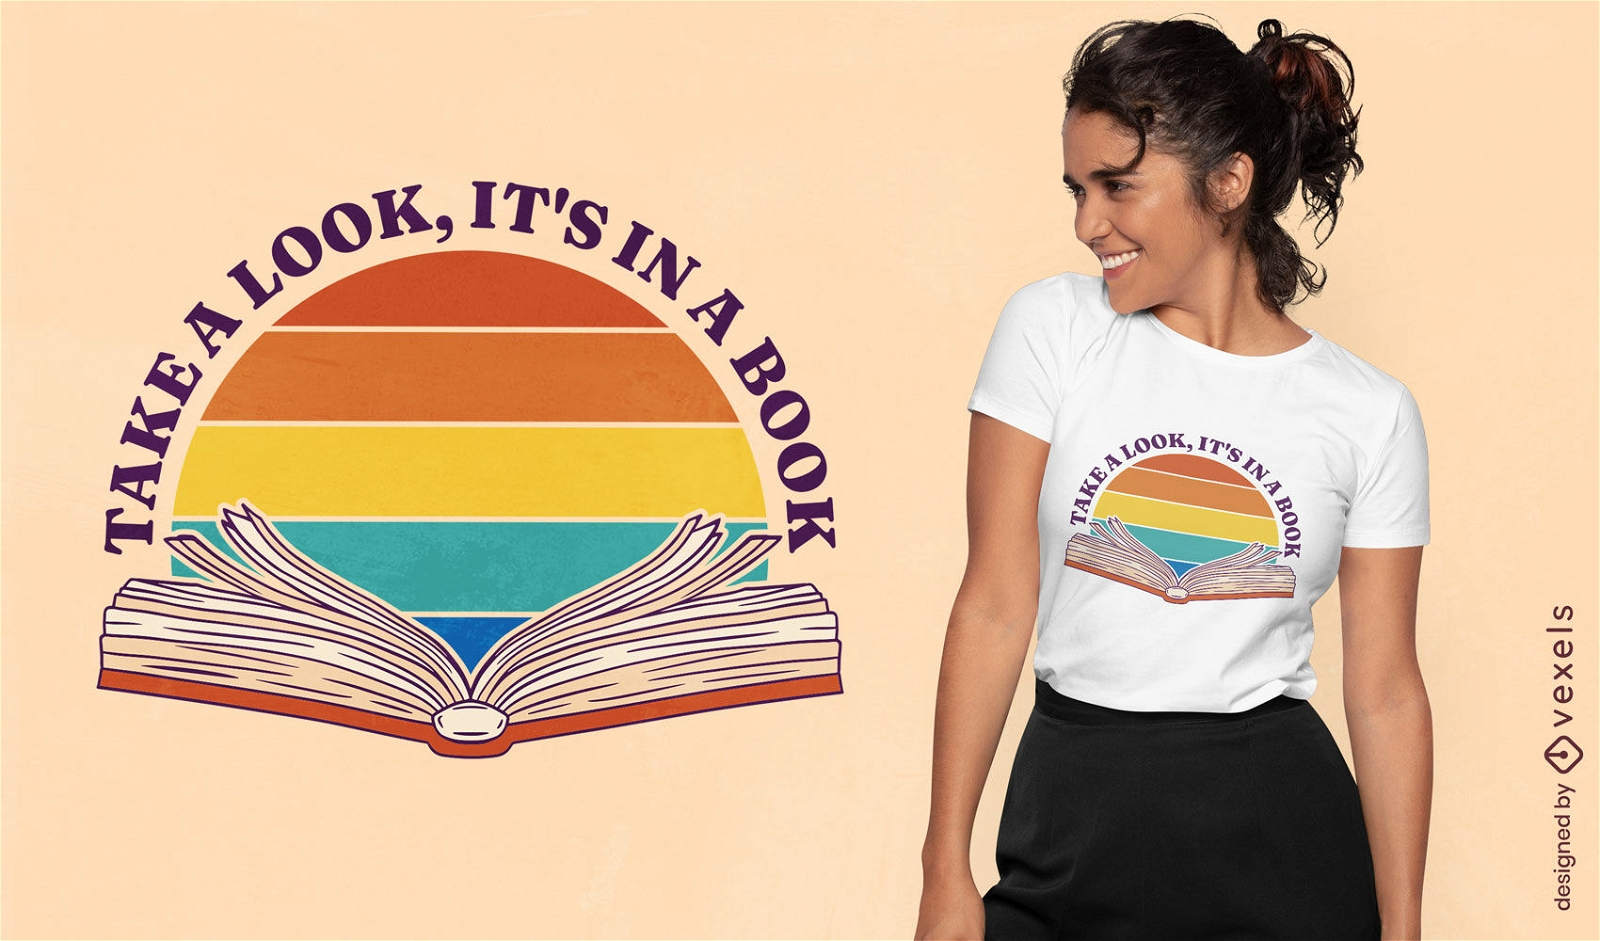 Echa un vistazo al diseño de la camiseta de la cita del libro.